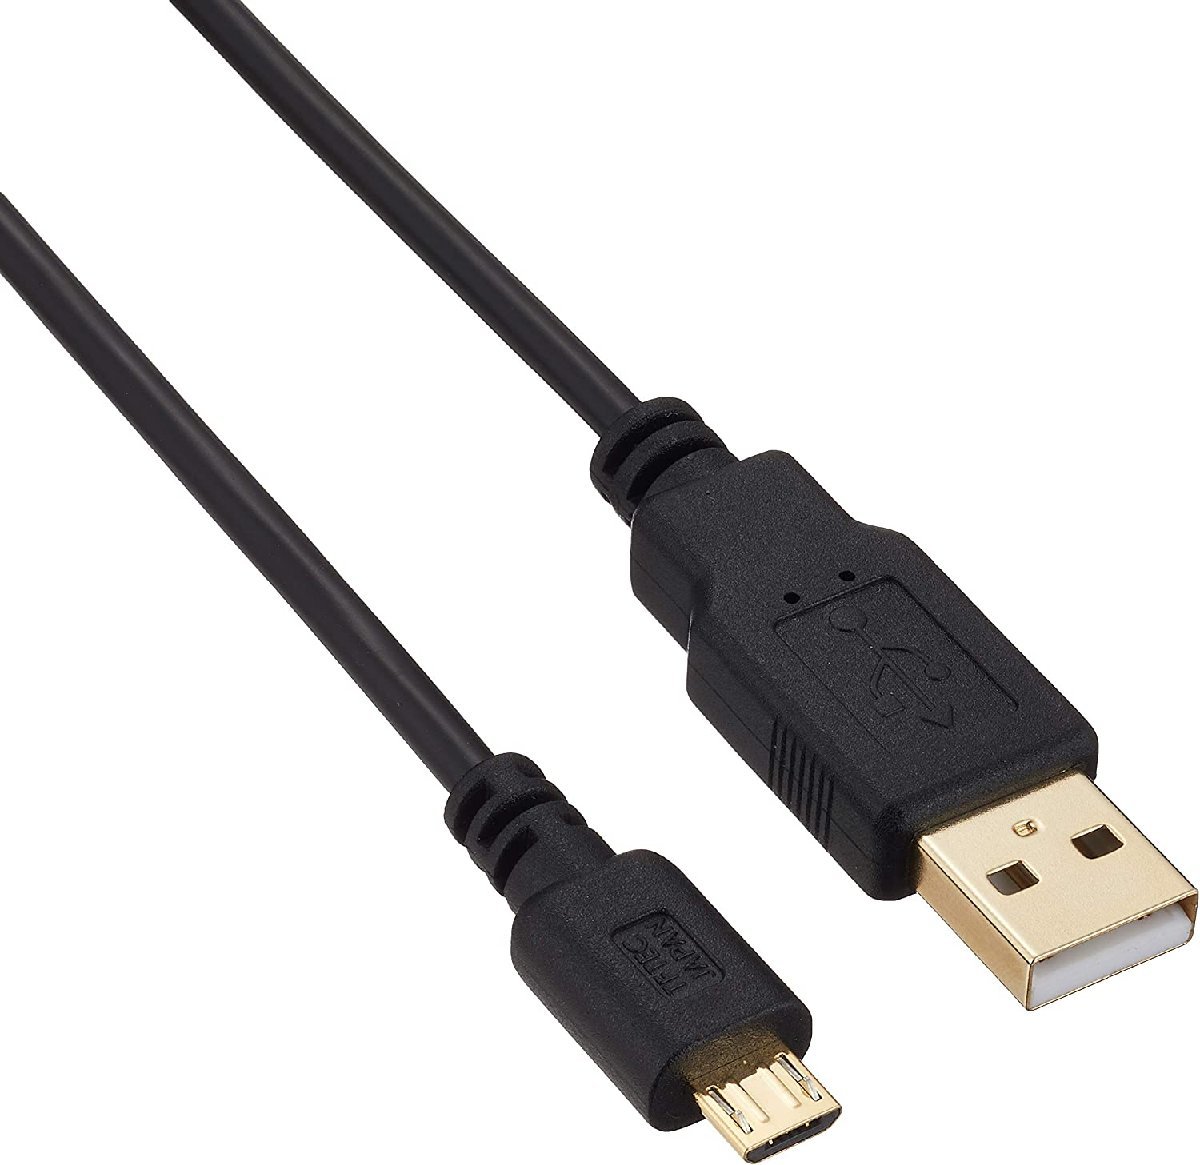 変換ケーブル USBケーブル 5m Micro-A 低損失アルミシールド 金メッキ端子採用 USB2A-MC/CA500/0375 変換名人/送料無料_画像1